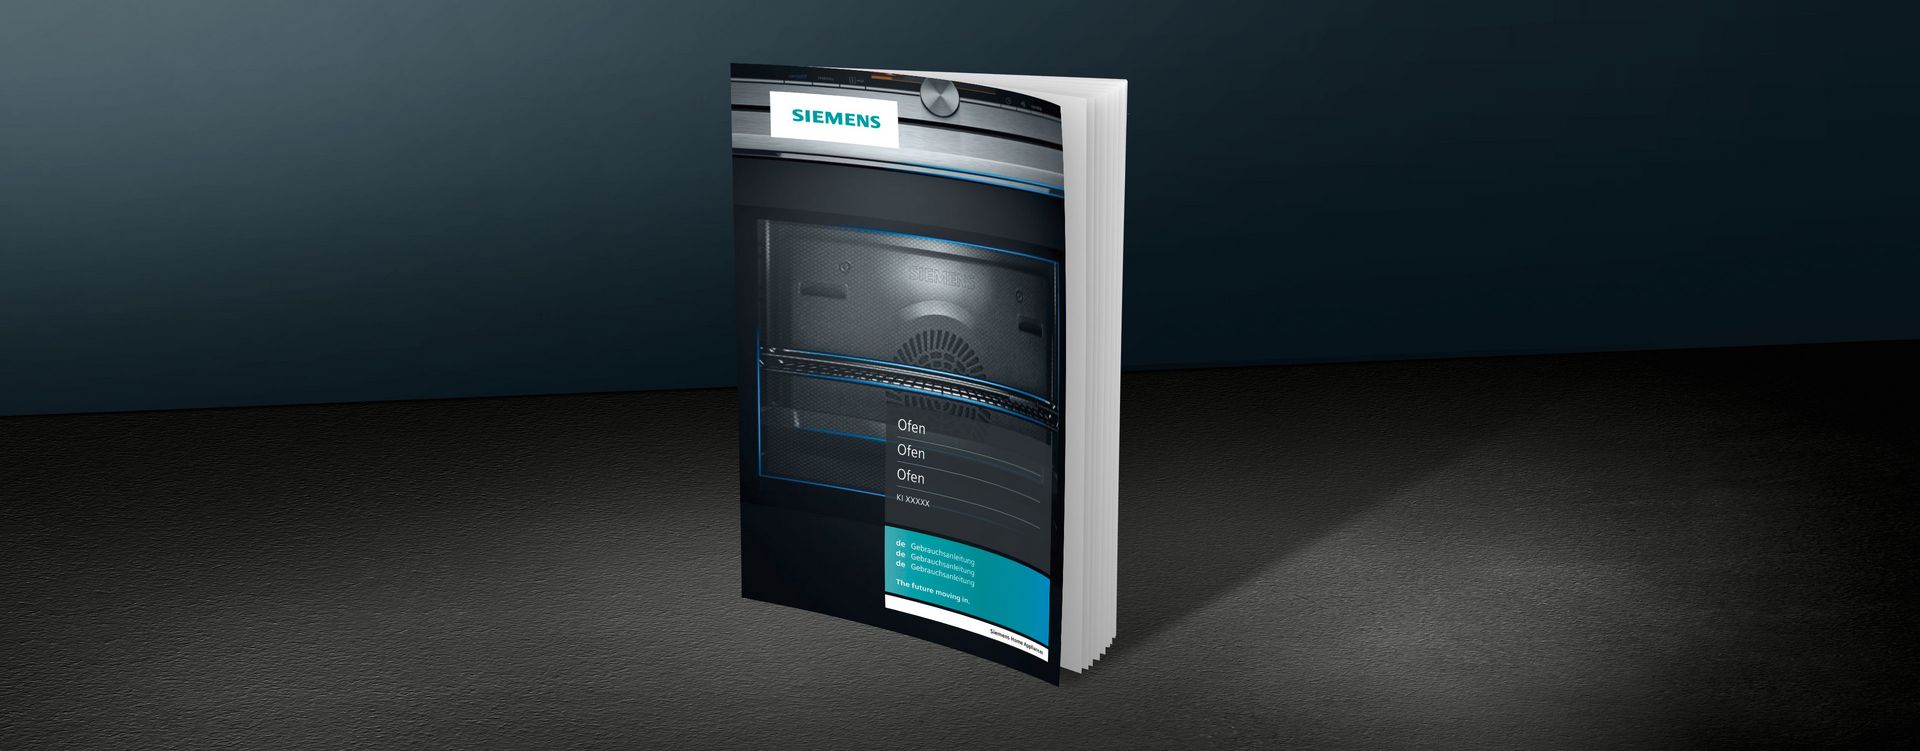 Uživatelské příručky a dokumenty ke spotřebiči Siemens